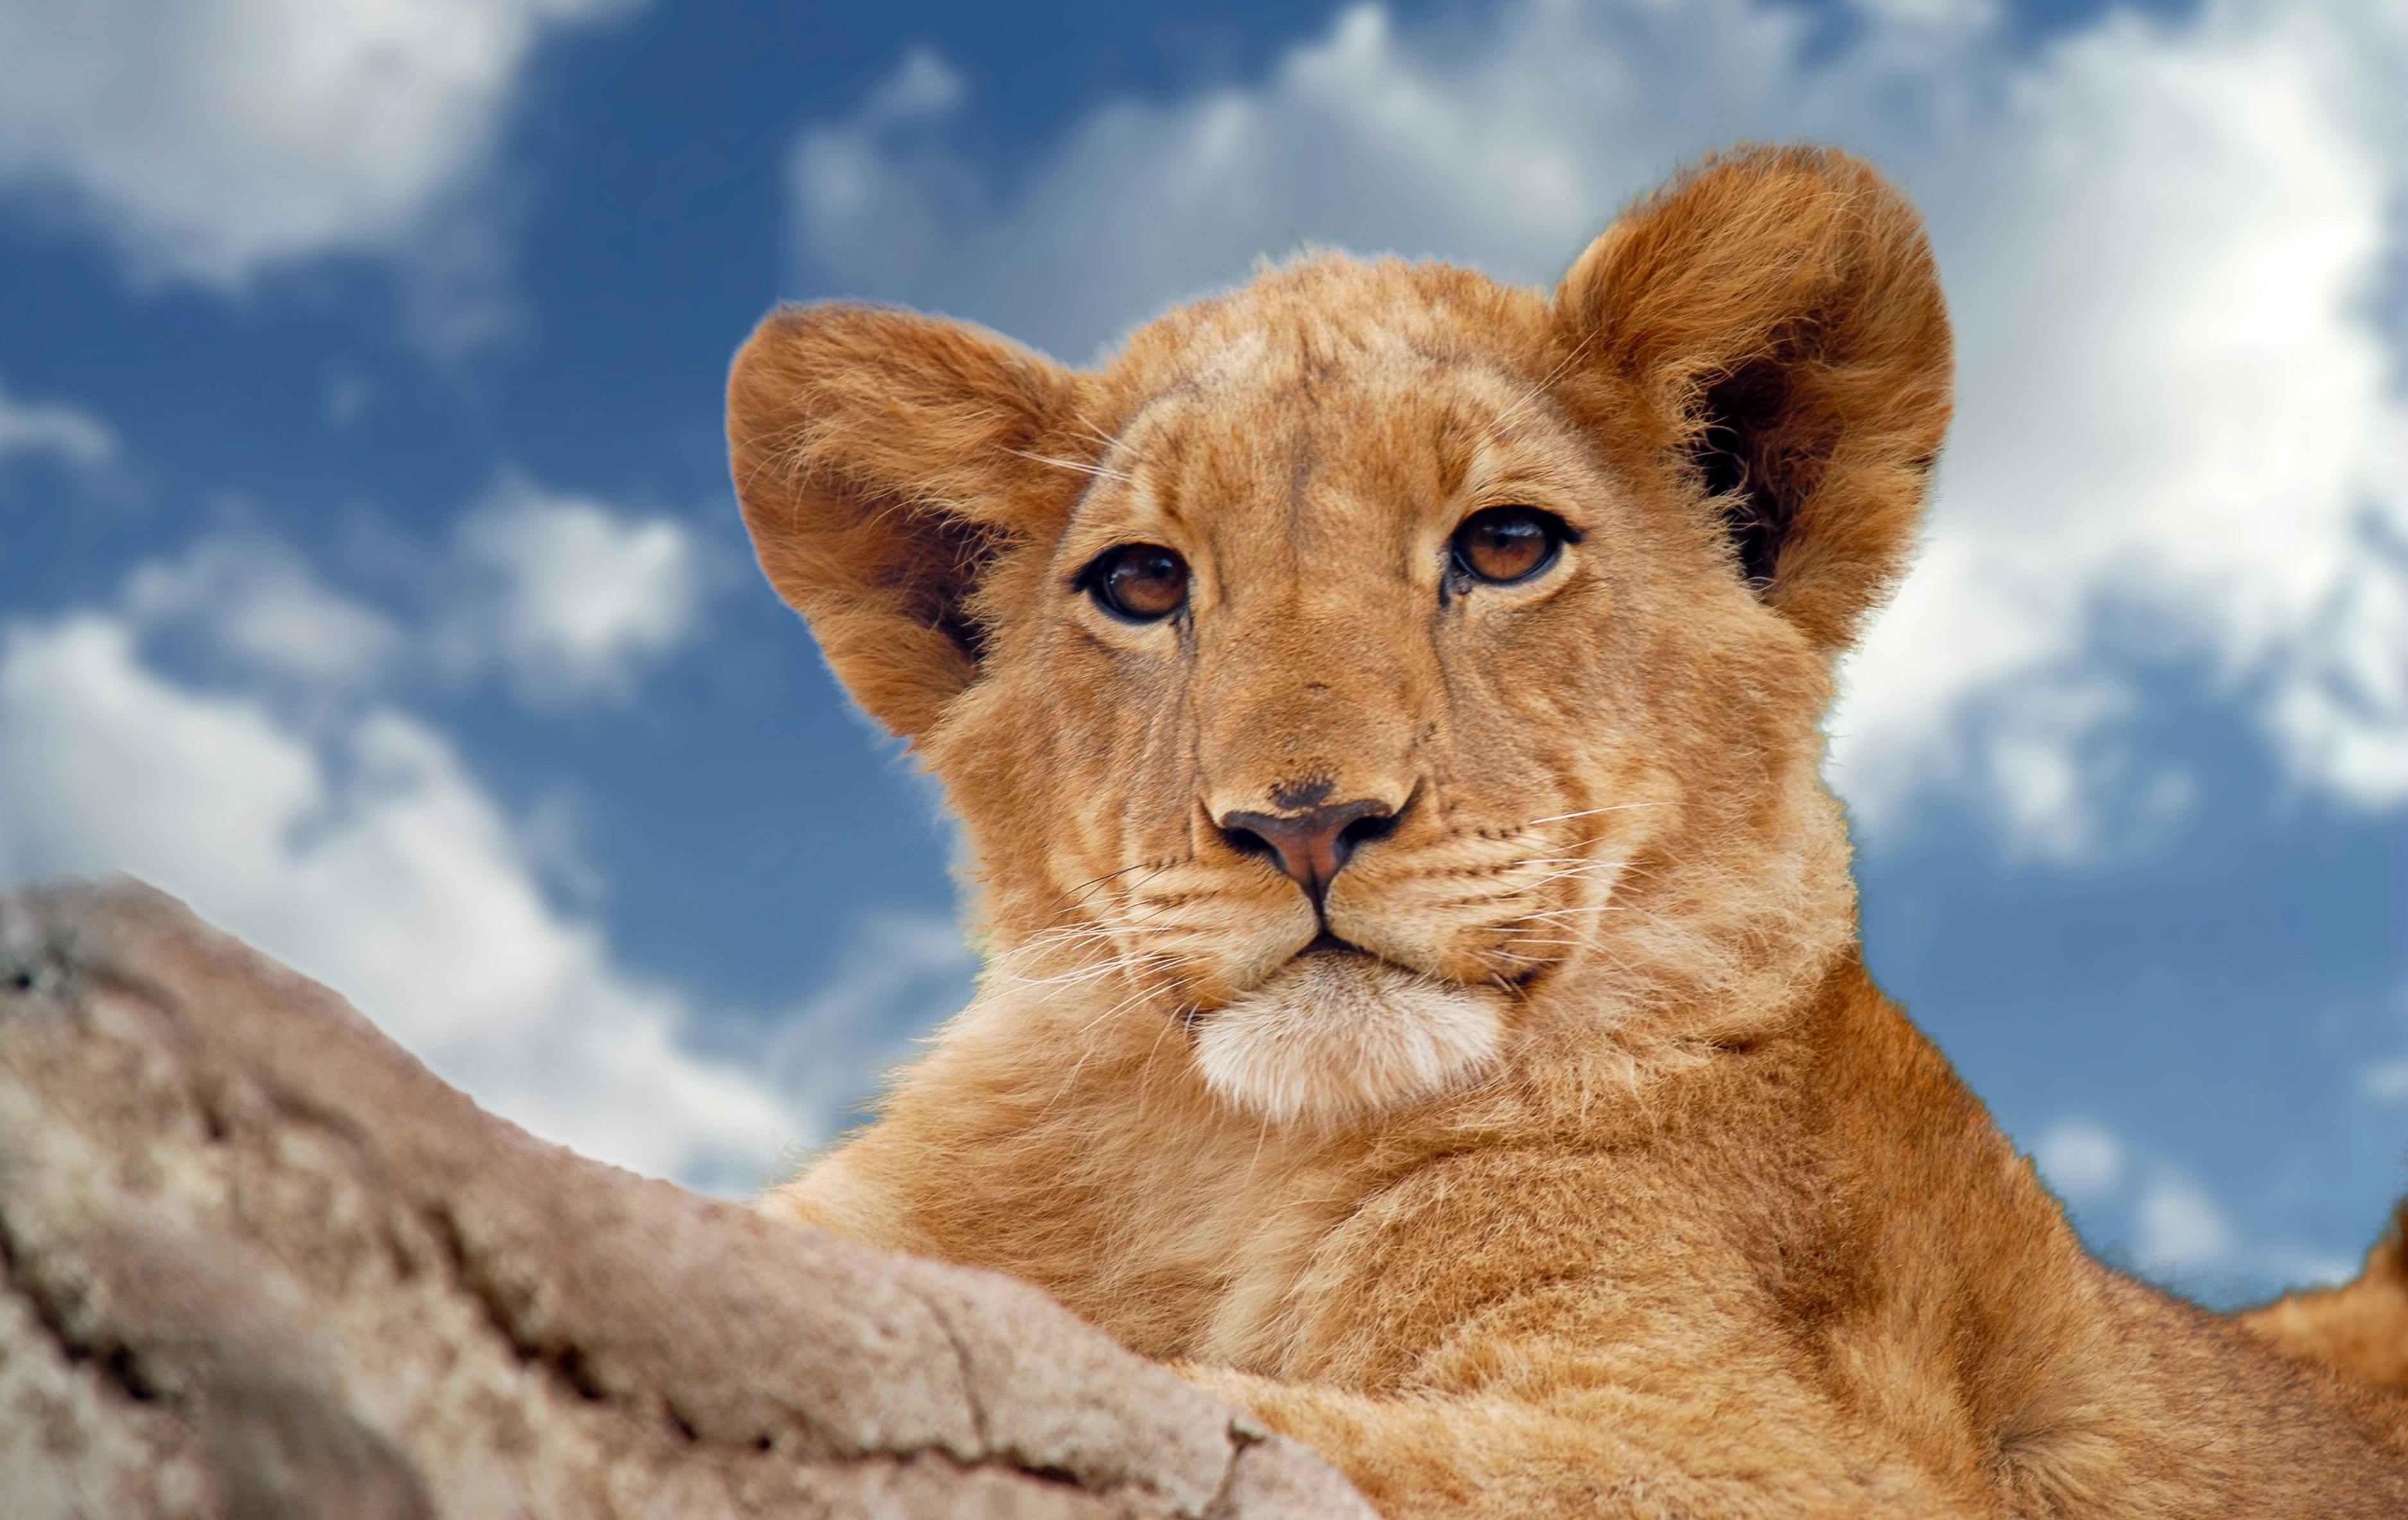  Foto  stok gratis tentang anak  singa  binatang binatang buas